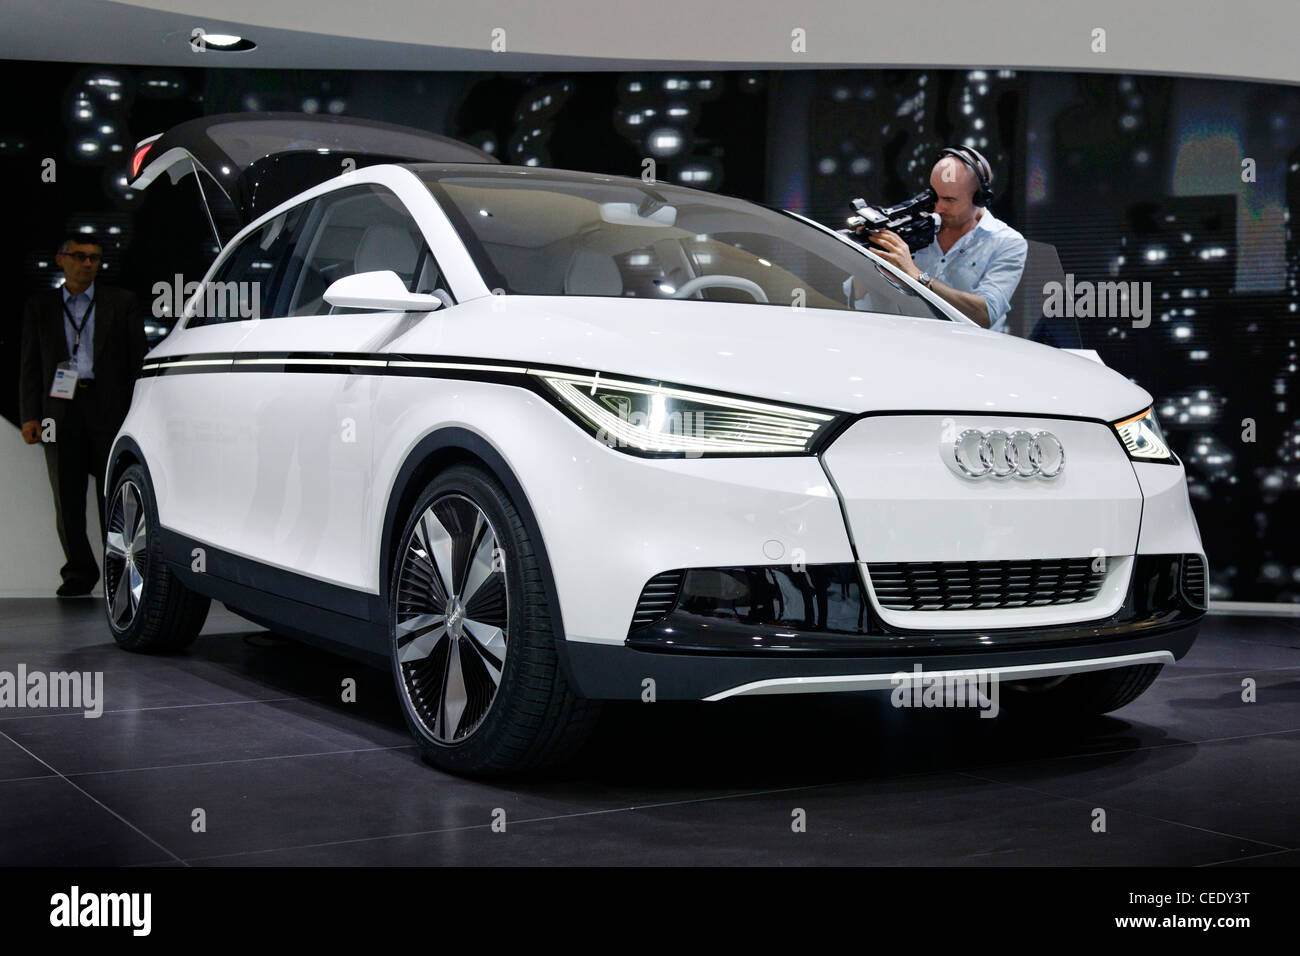 14 photos et images de Audi A2 Concept - Getty Images